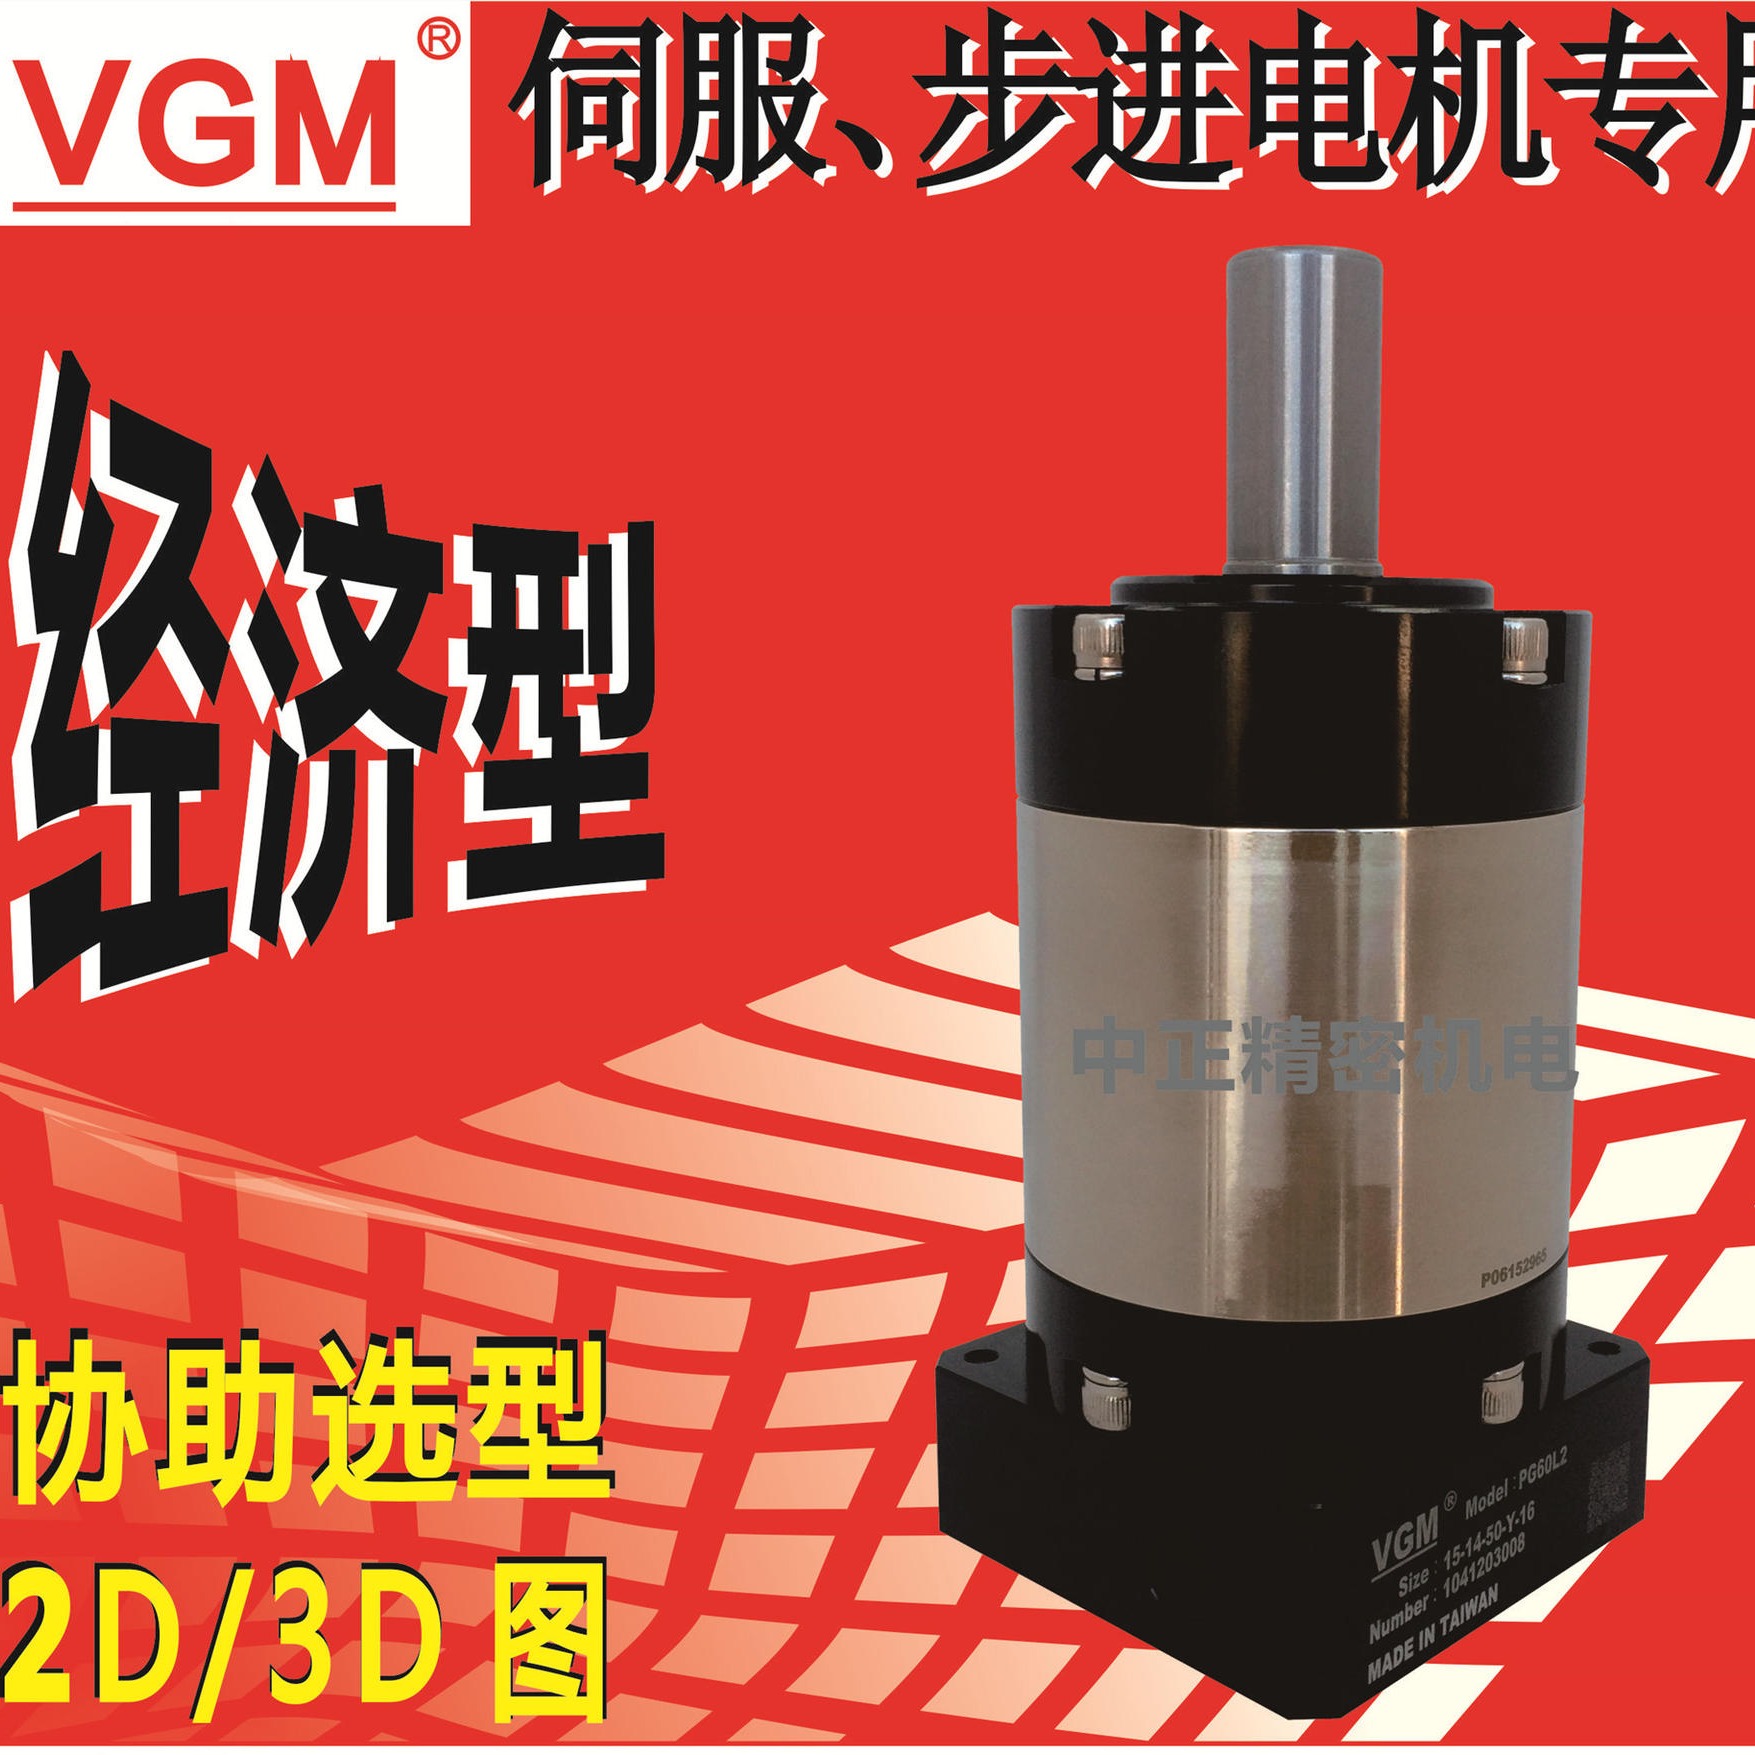 台湾聚盛VGM销售和售后服务中心大陆唯一总代理行星减速机PG90L1-10-16-80-Y齿轮减速箱